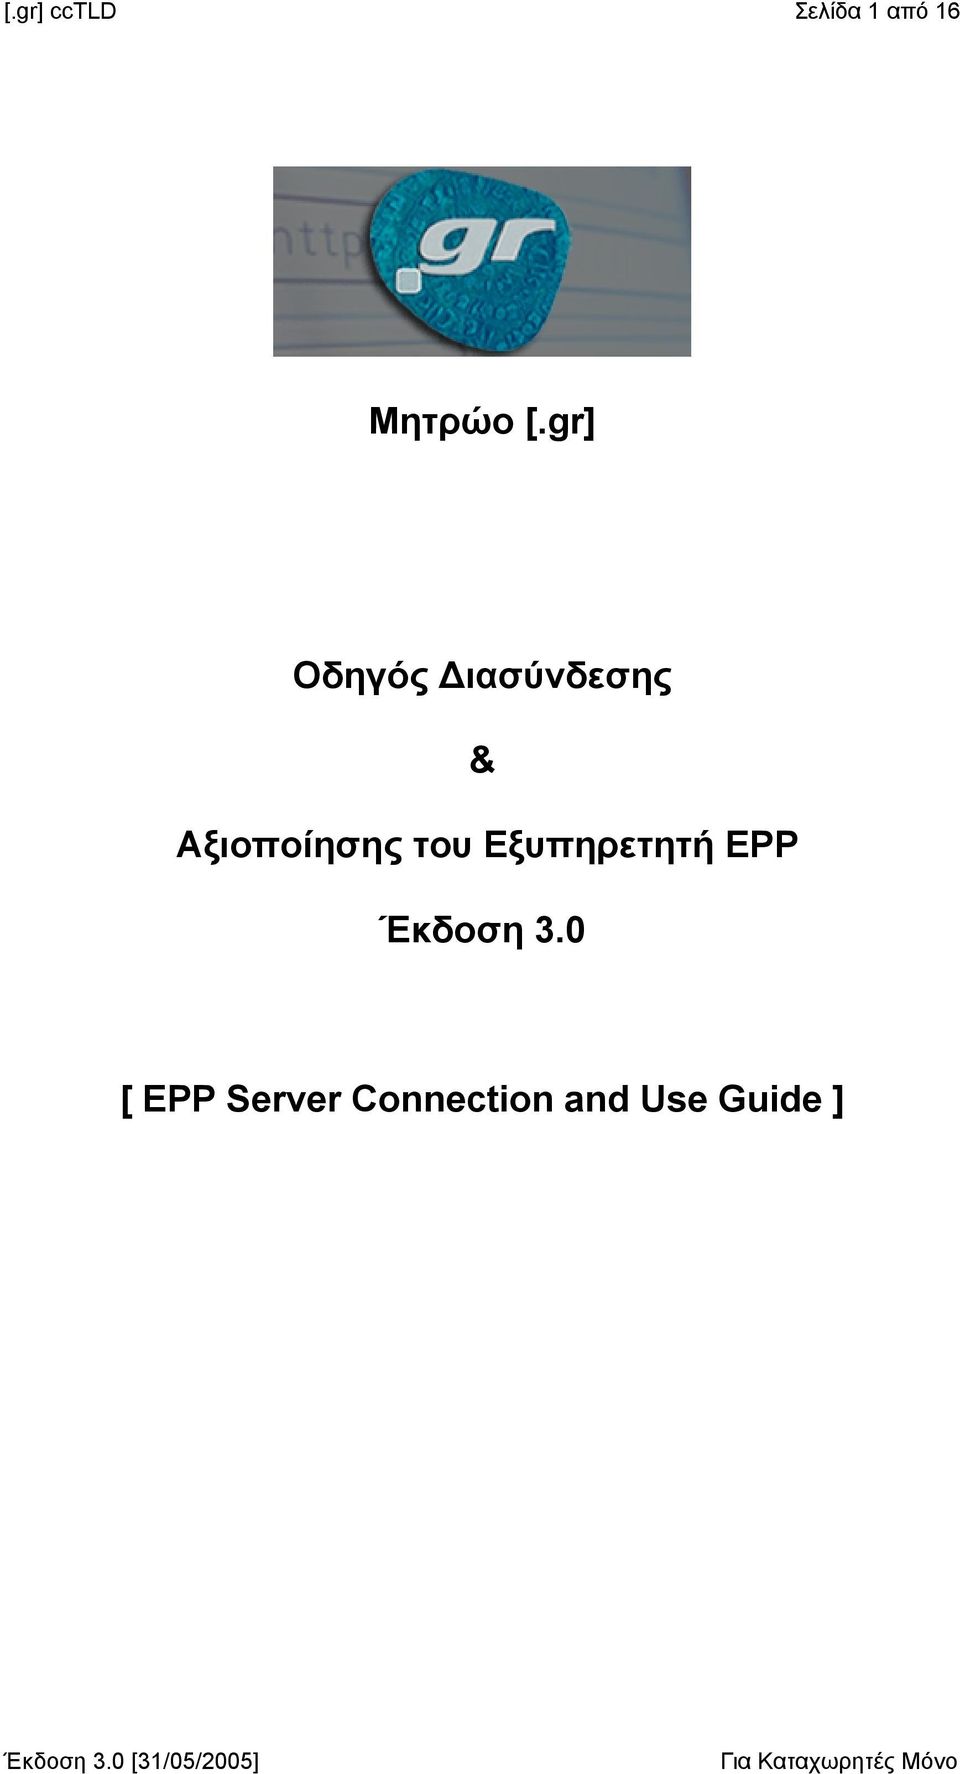 Αξιοποίησης του Εξυπηρετητή EPP